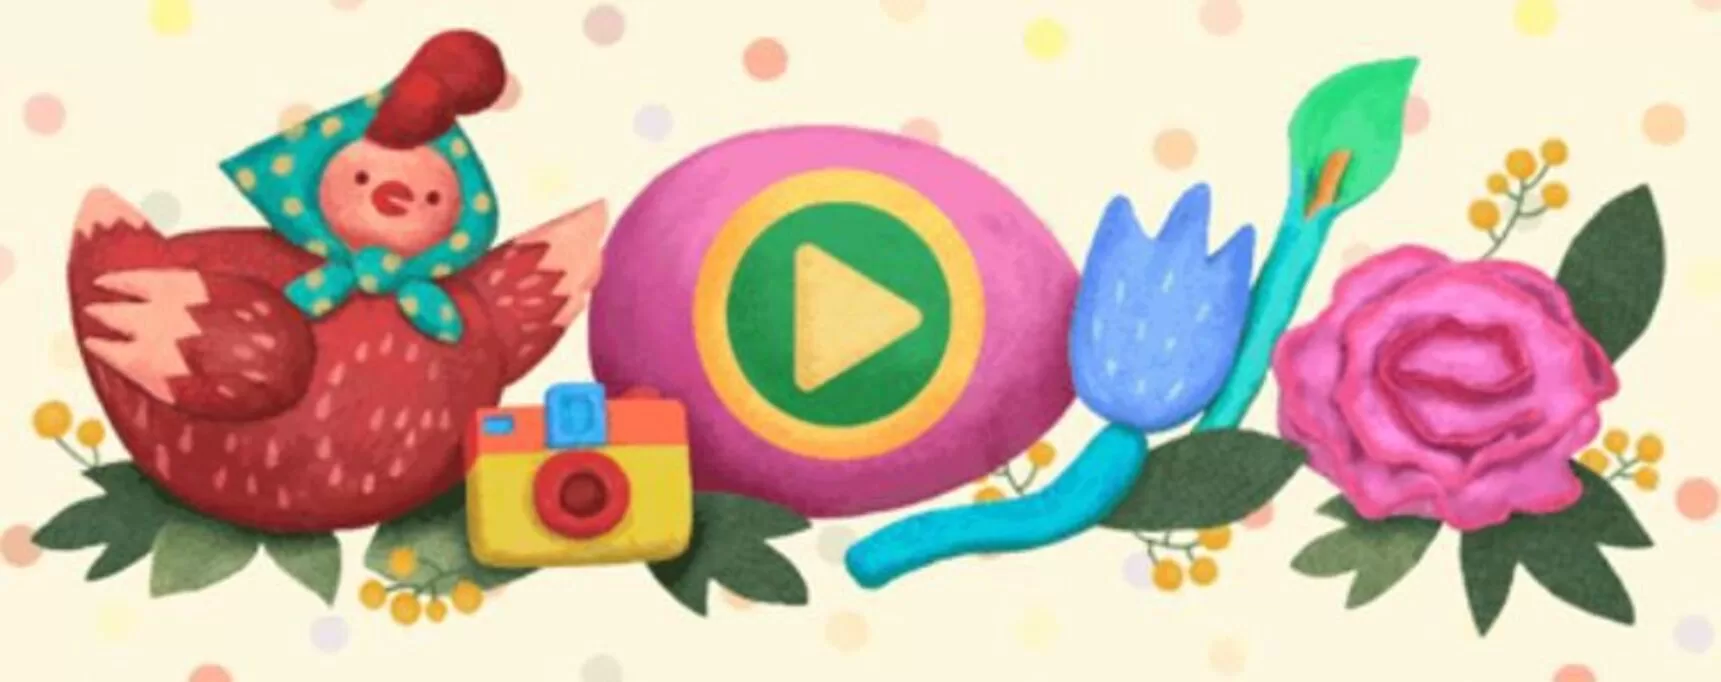 Festa-della-mamma-doodle-google